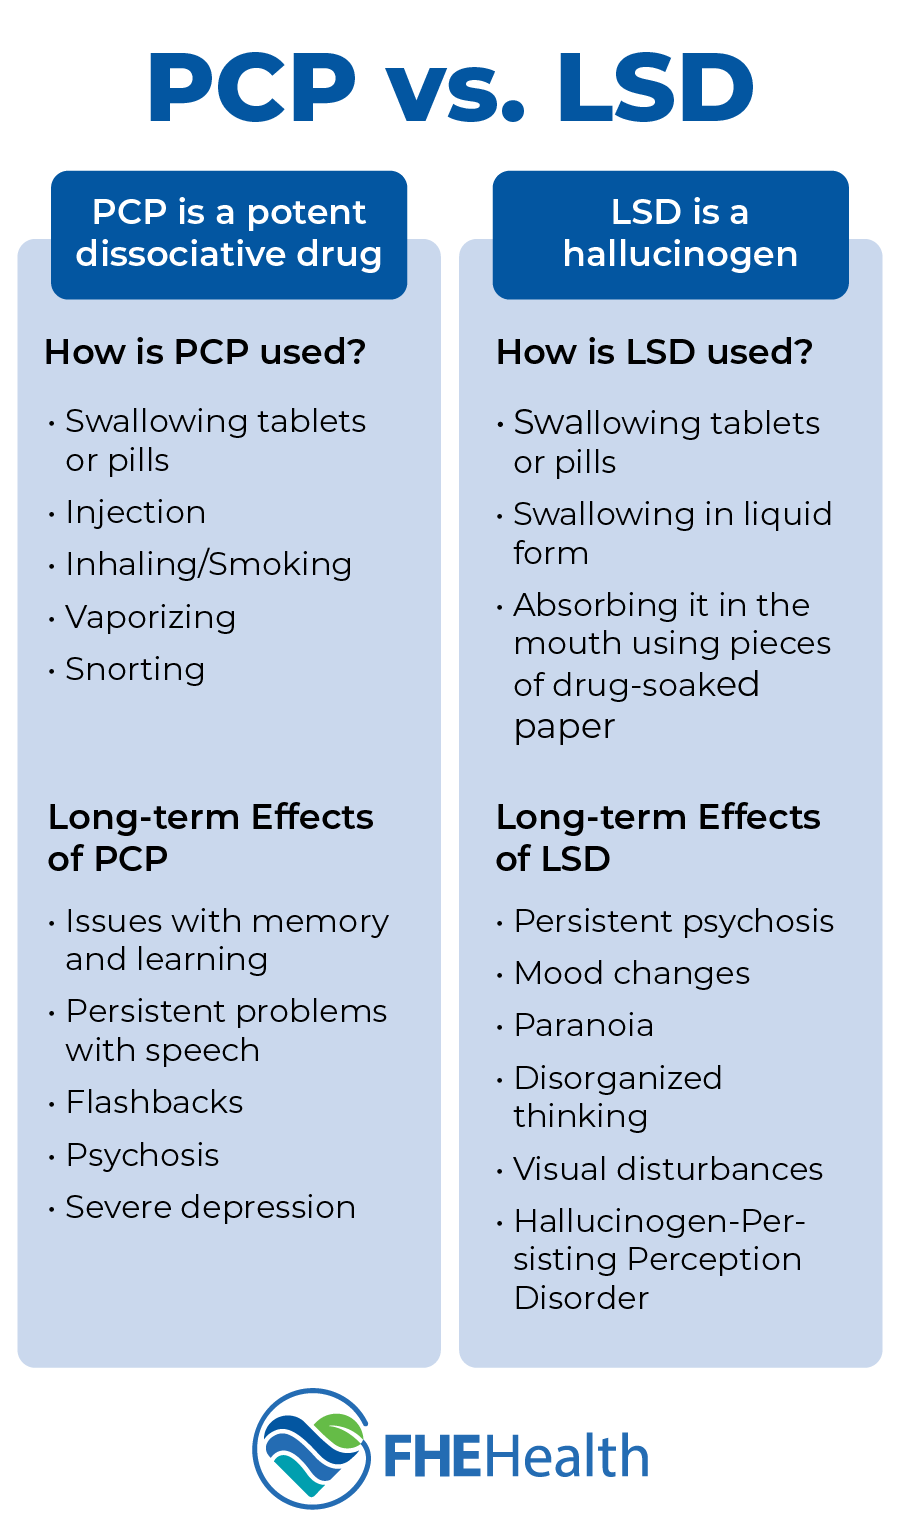 PCP vs LSD